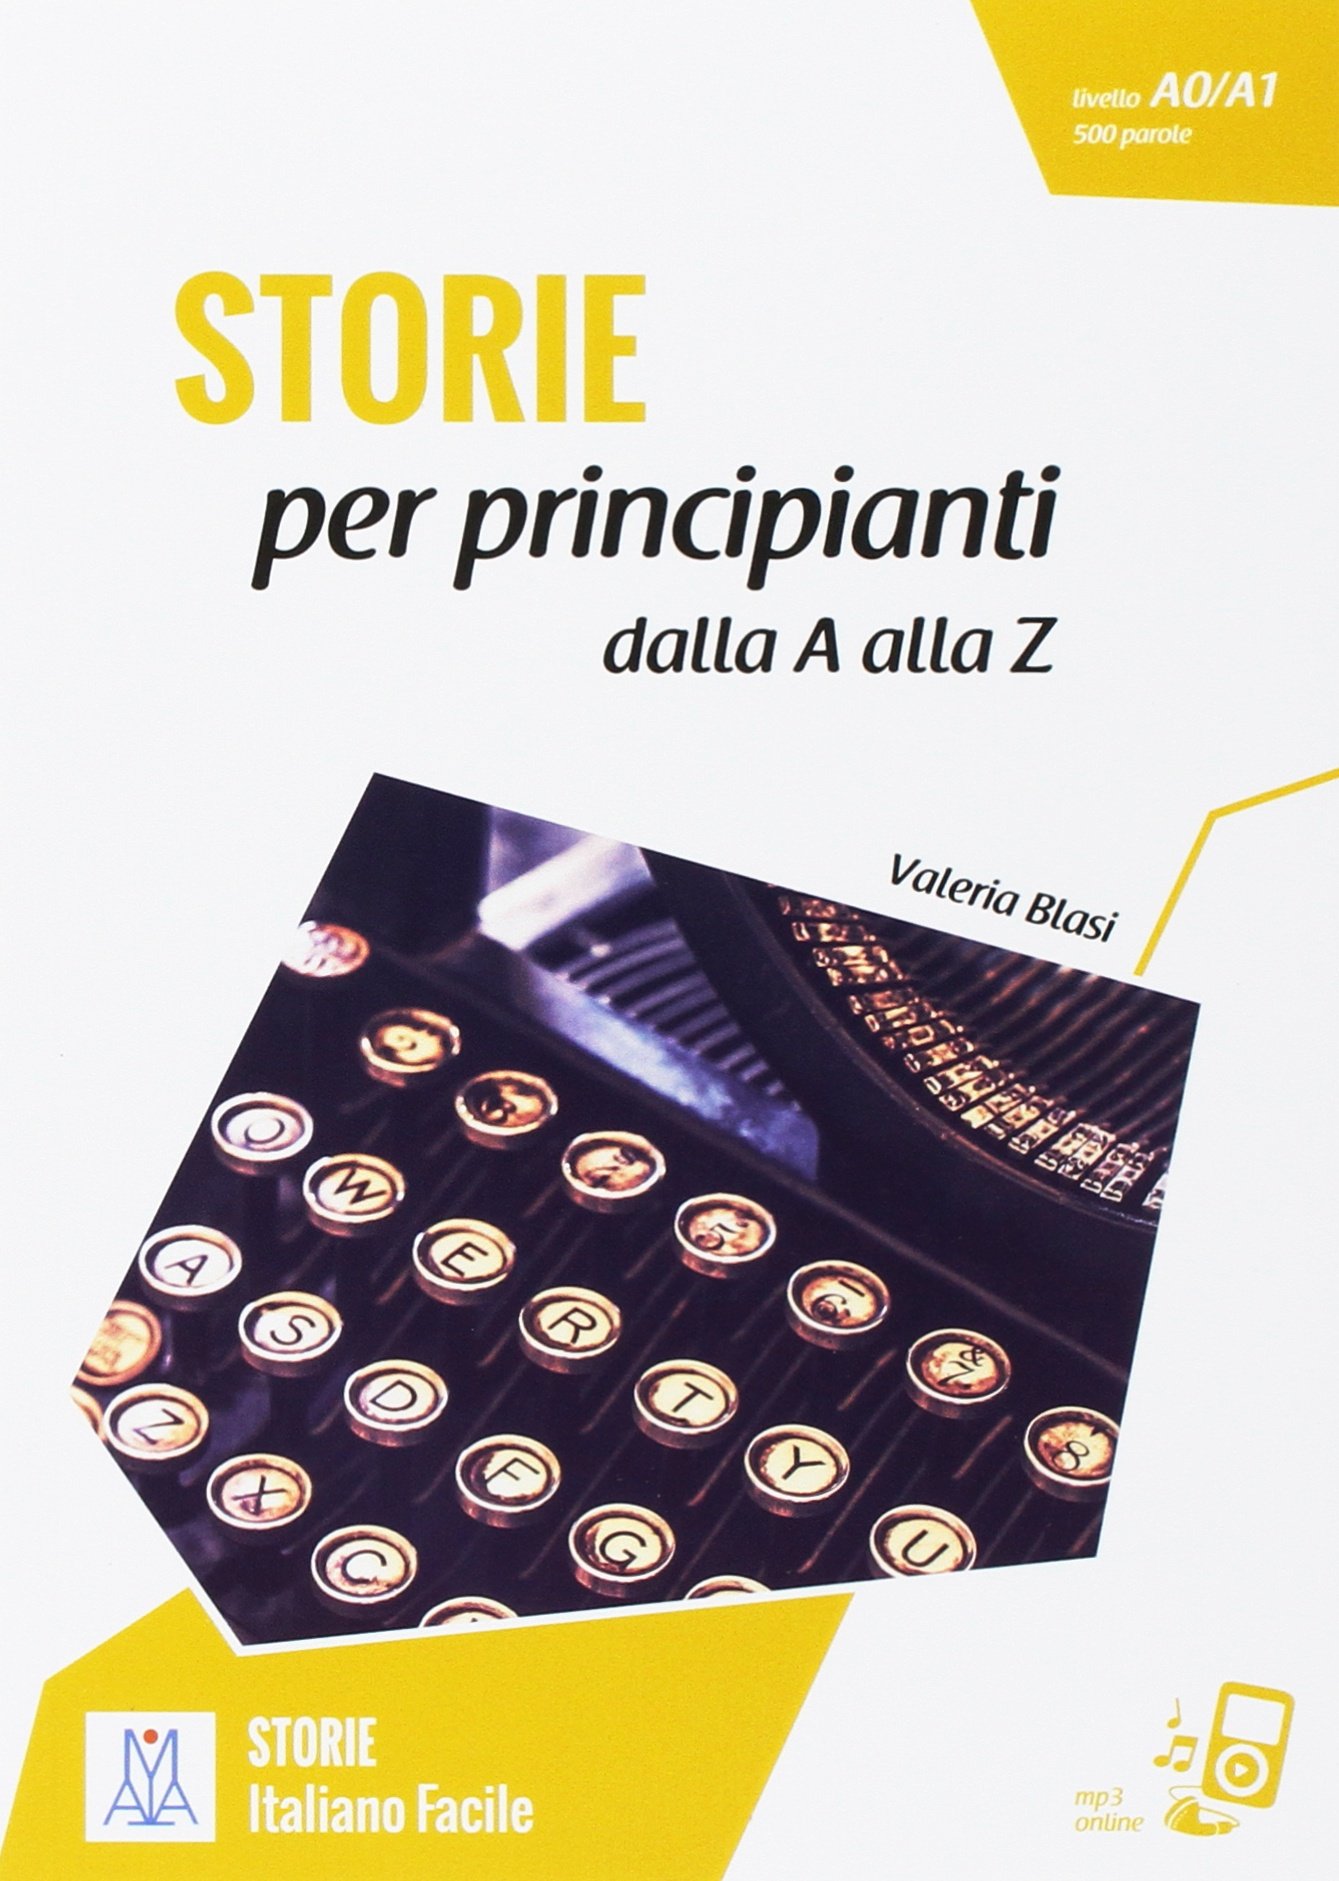 STORIE ITALIANO FACILE Storie per principianti dalla A alla Z Libro